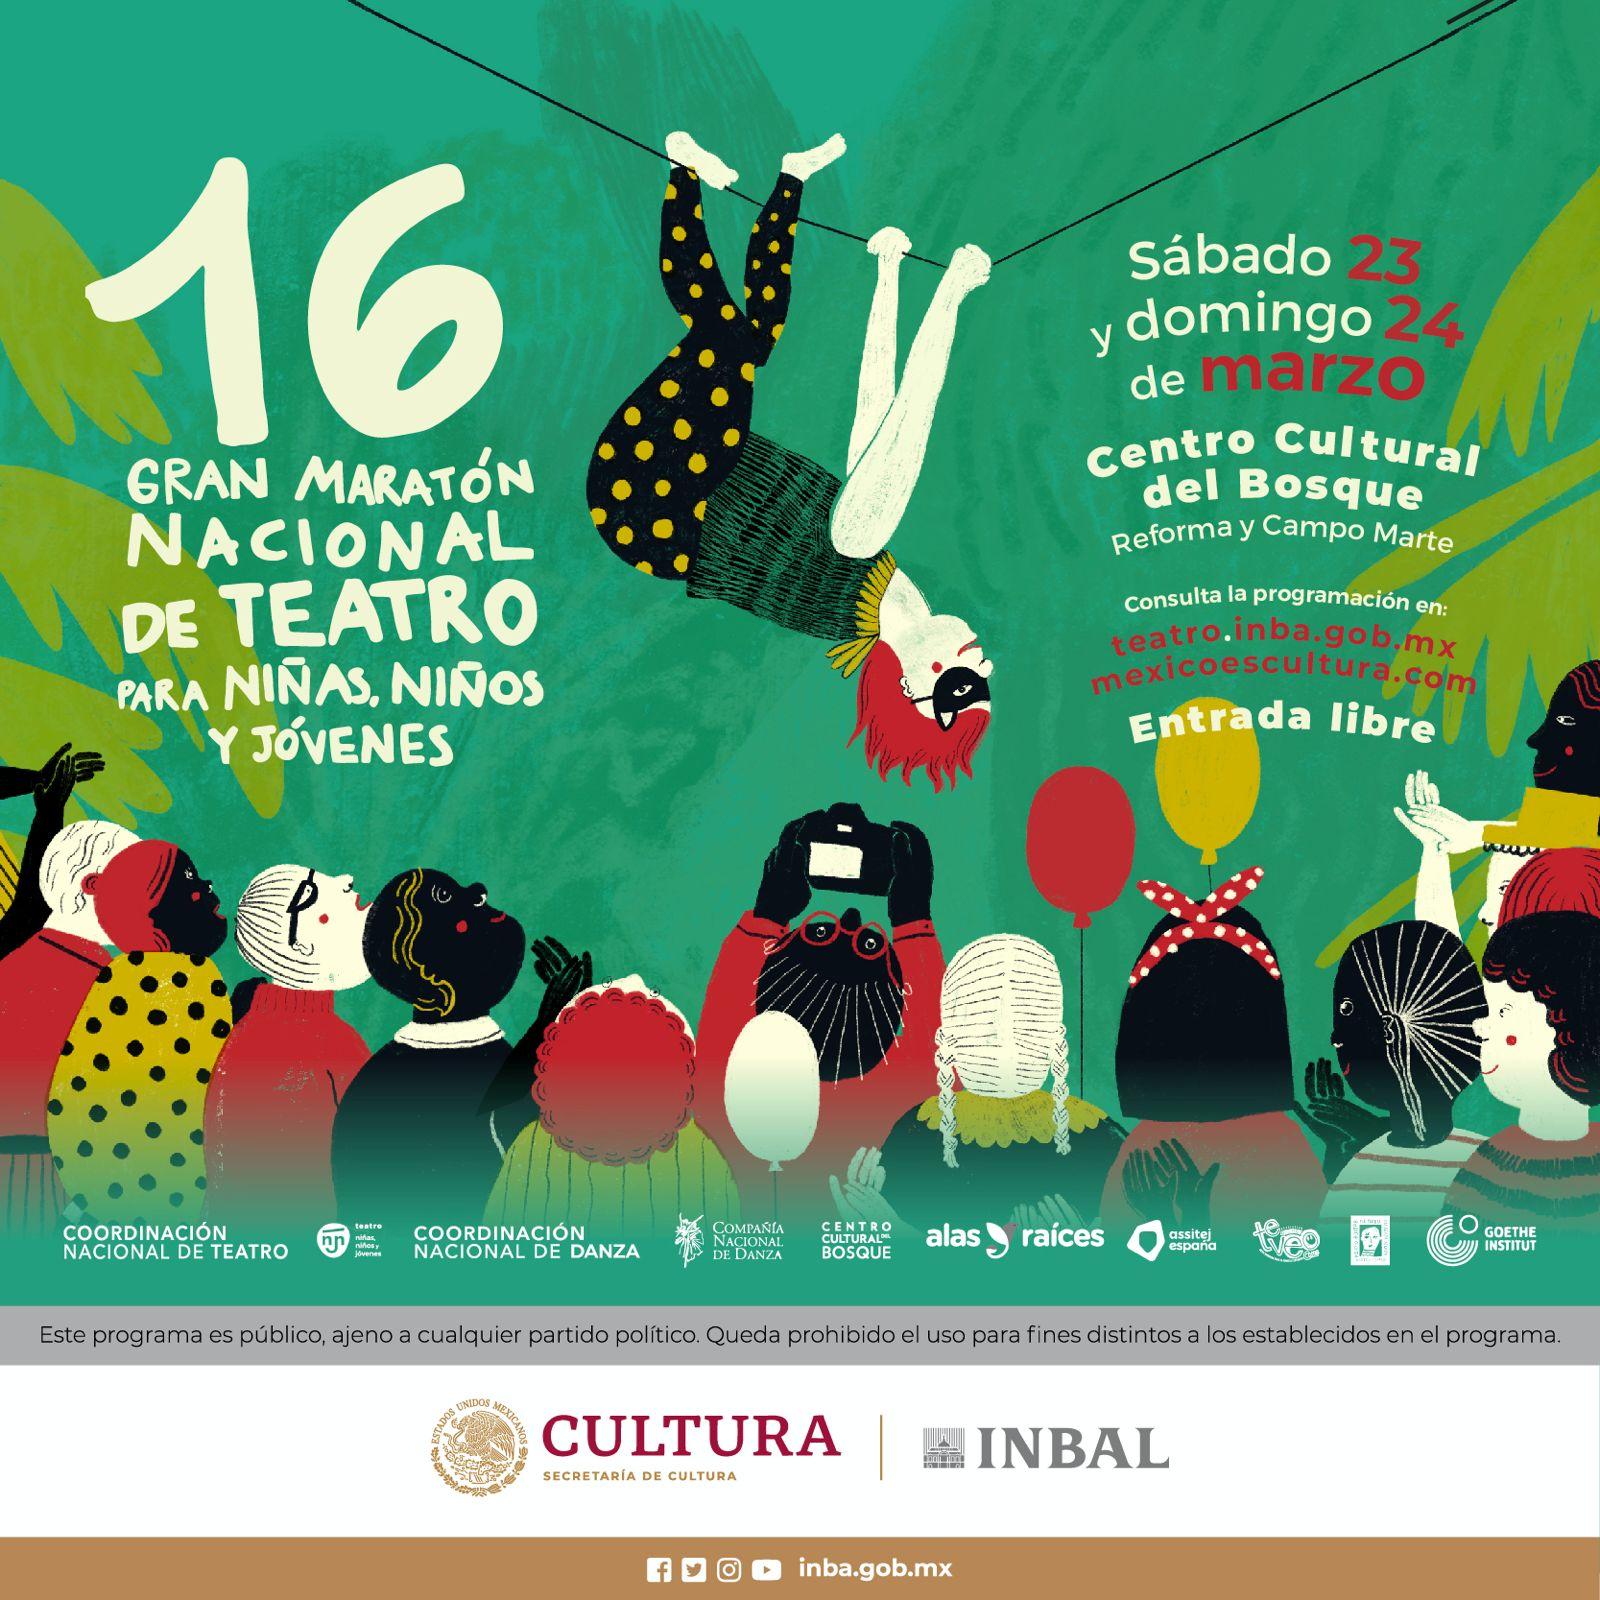 墨西哥庆祝第 16 届少年儿童大型戏剧节